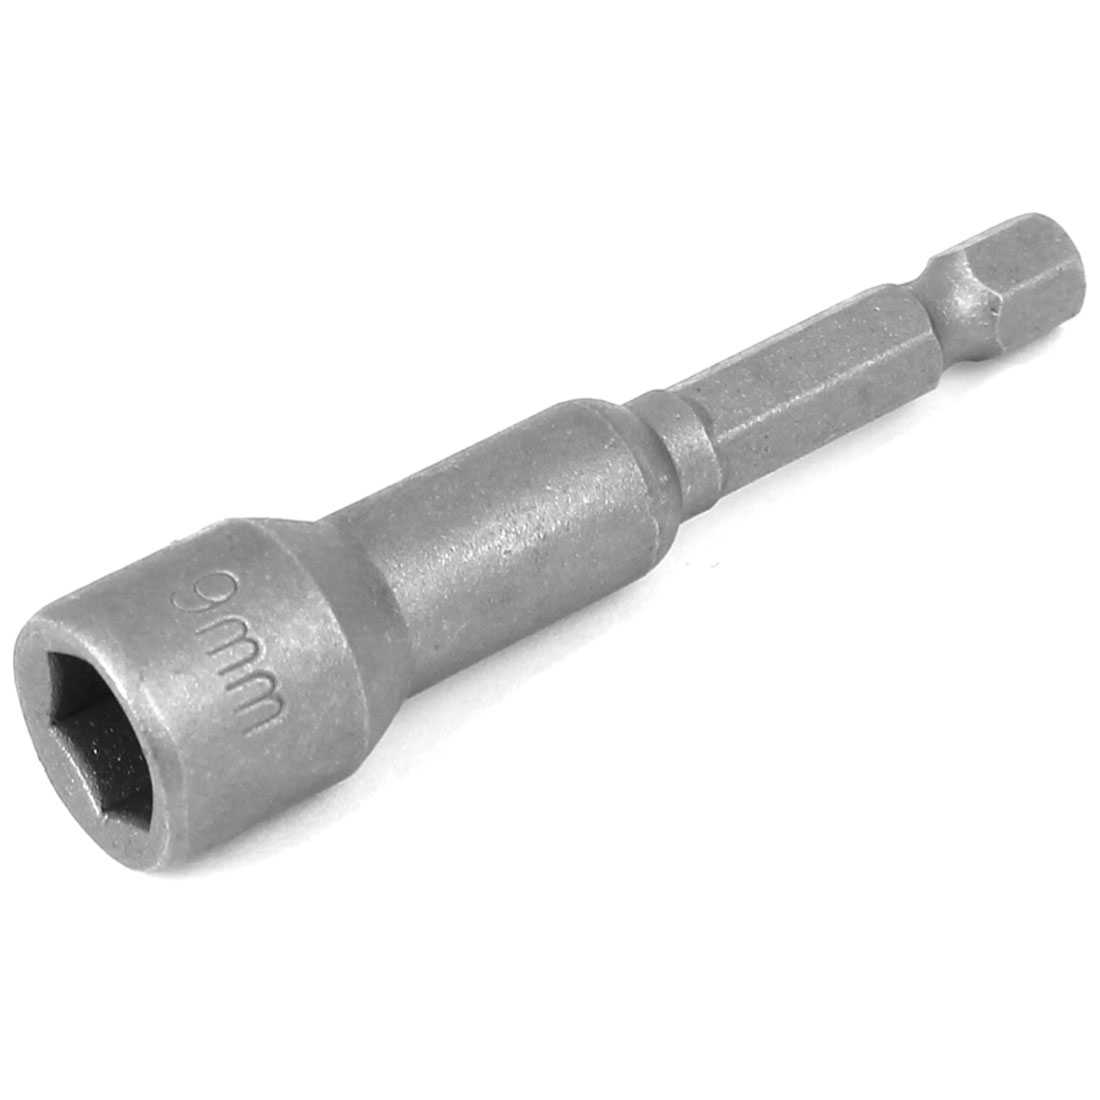 Bell Shape 9mm Hex Socket Nut Setter Driver Gray 65mm Length